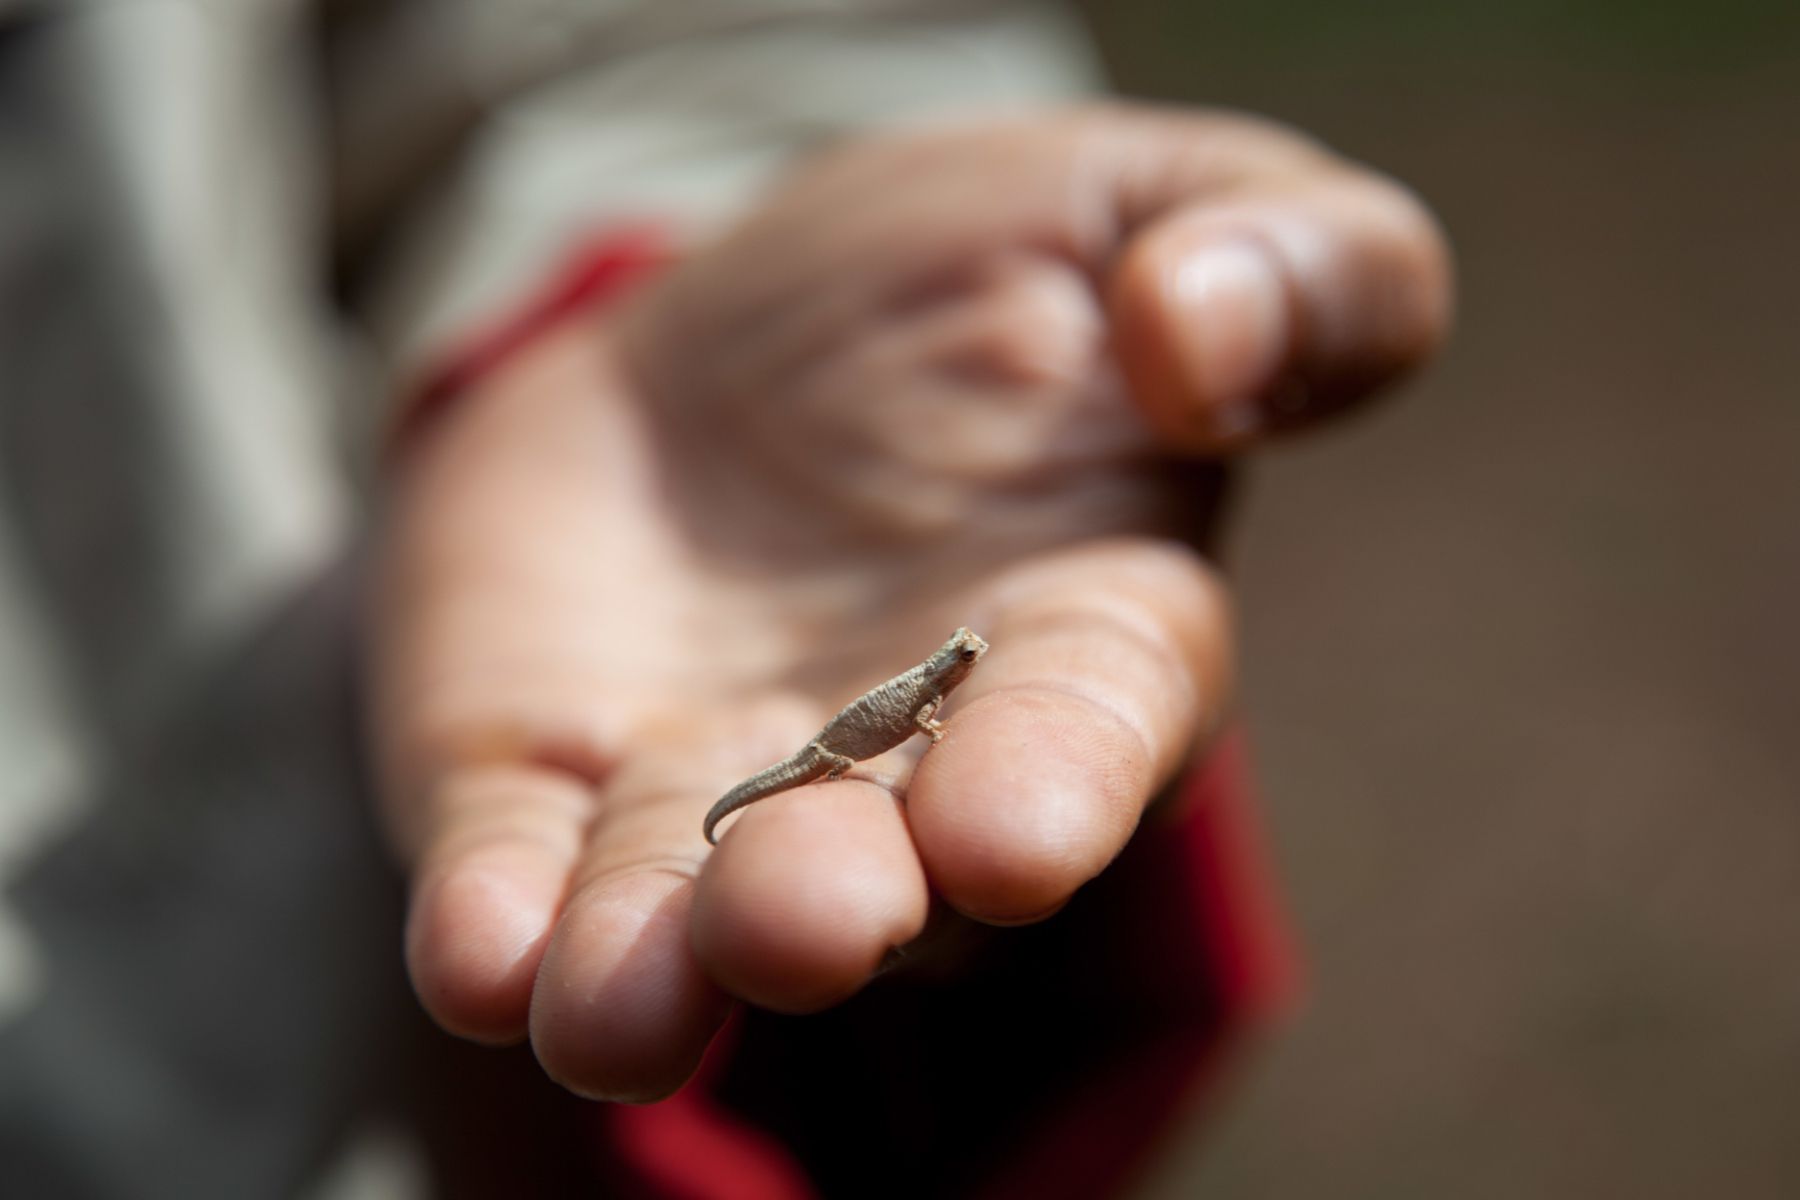 pequeño lagarto camaleón de pie sobre dos dedos humanos